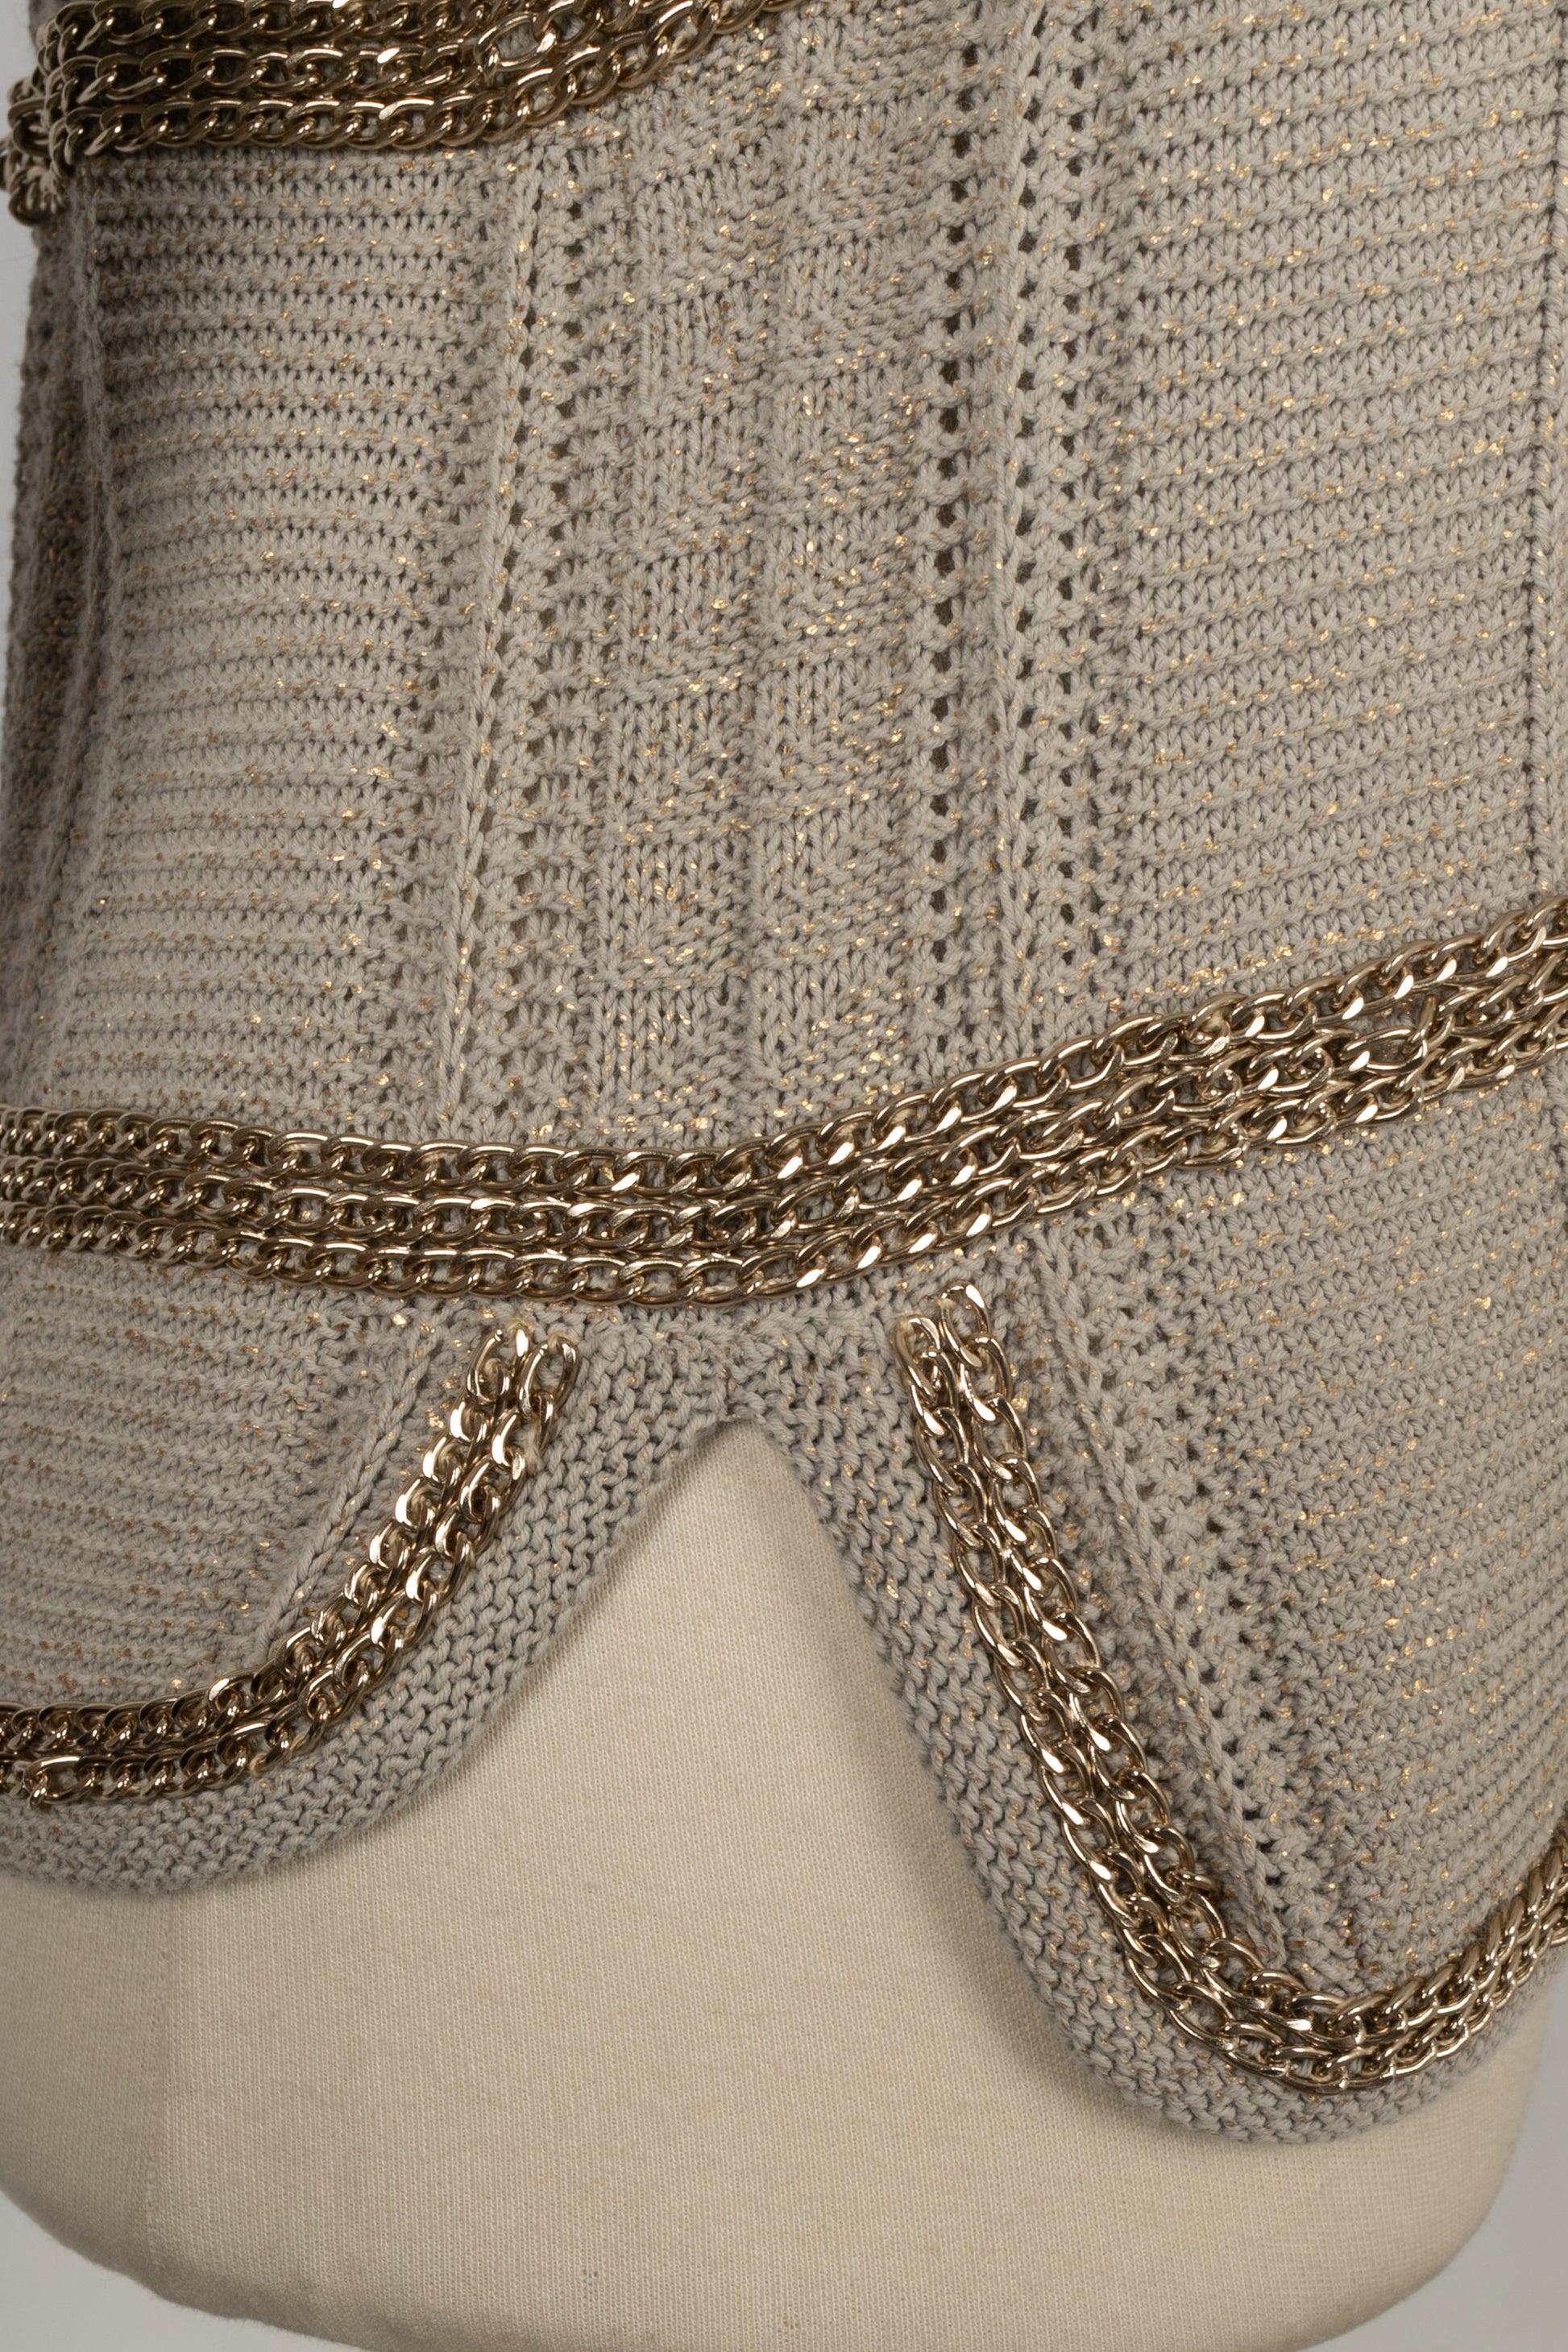 Chanel Coated Mesh Cardigan in Beige/Golden Tones, 2008 For Sale 3